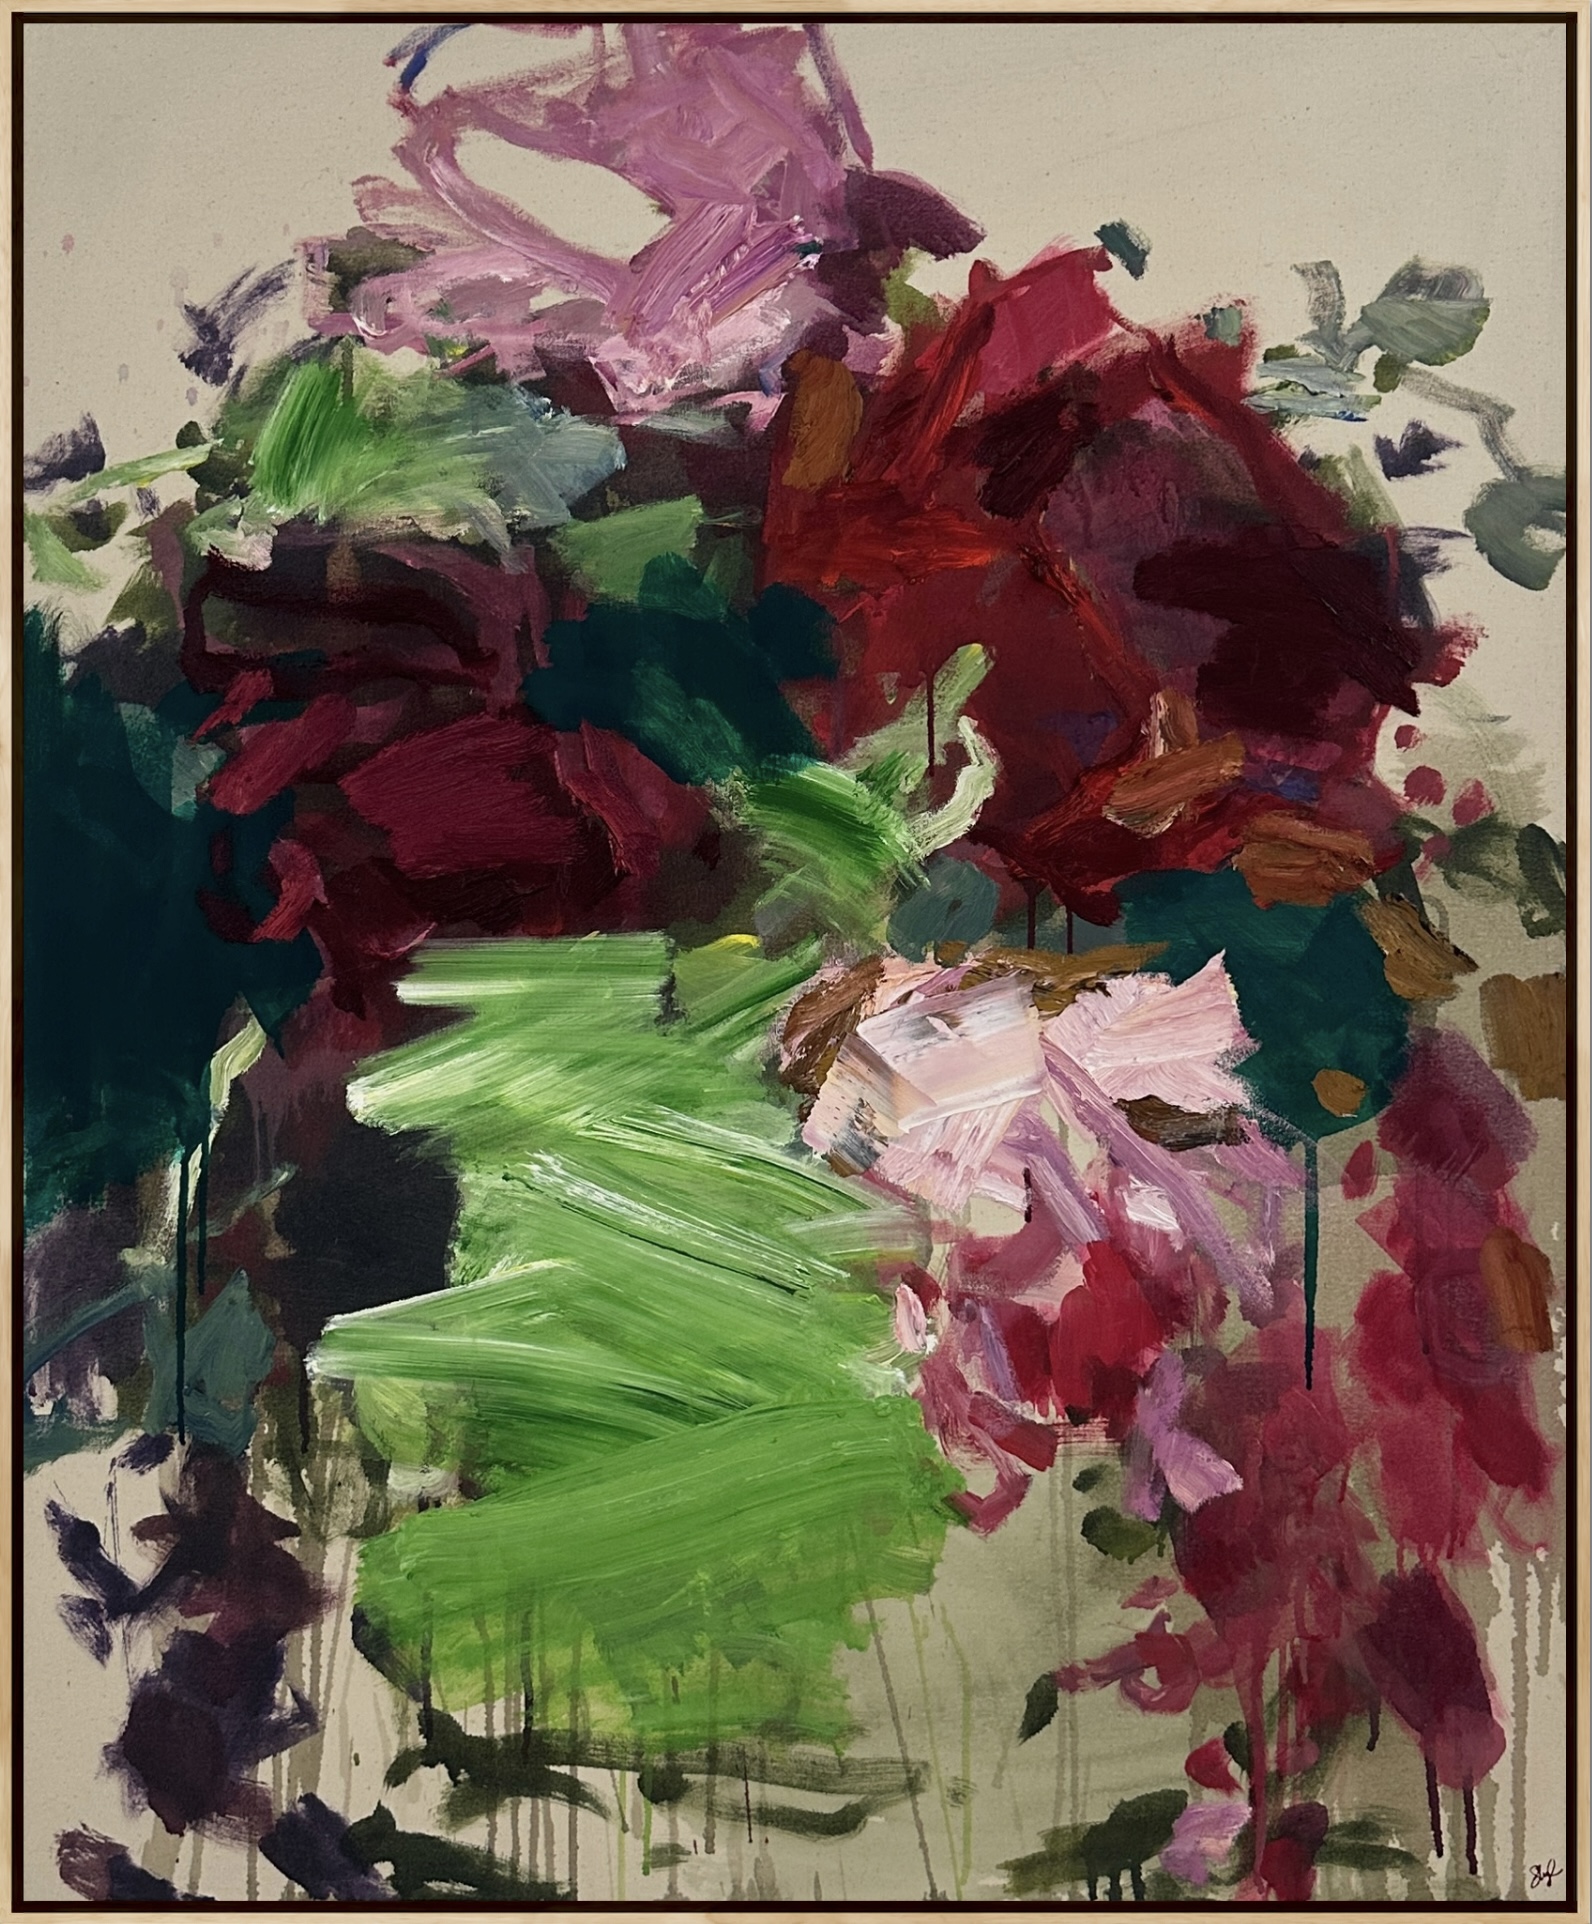 Imagined-Bouquet-Llewellyn-Skye-oil-and-acrylic-on-canvas-126×106-framed-in-oak-6000jpg-1